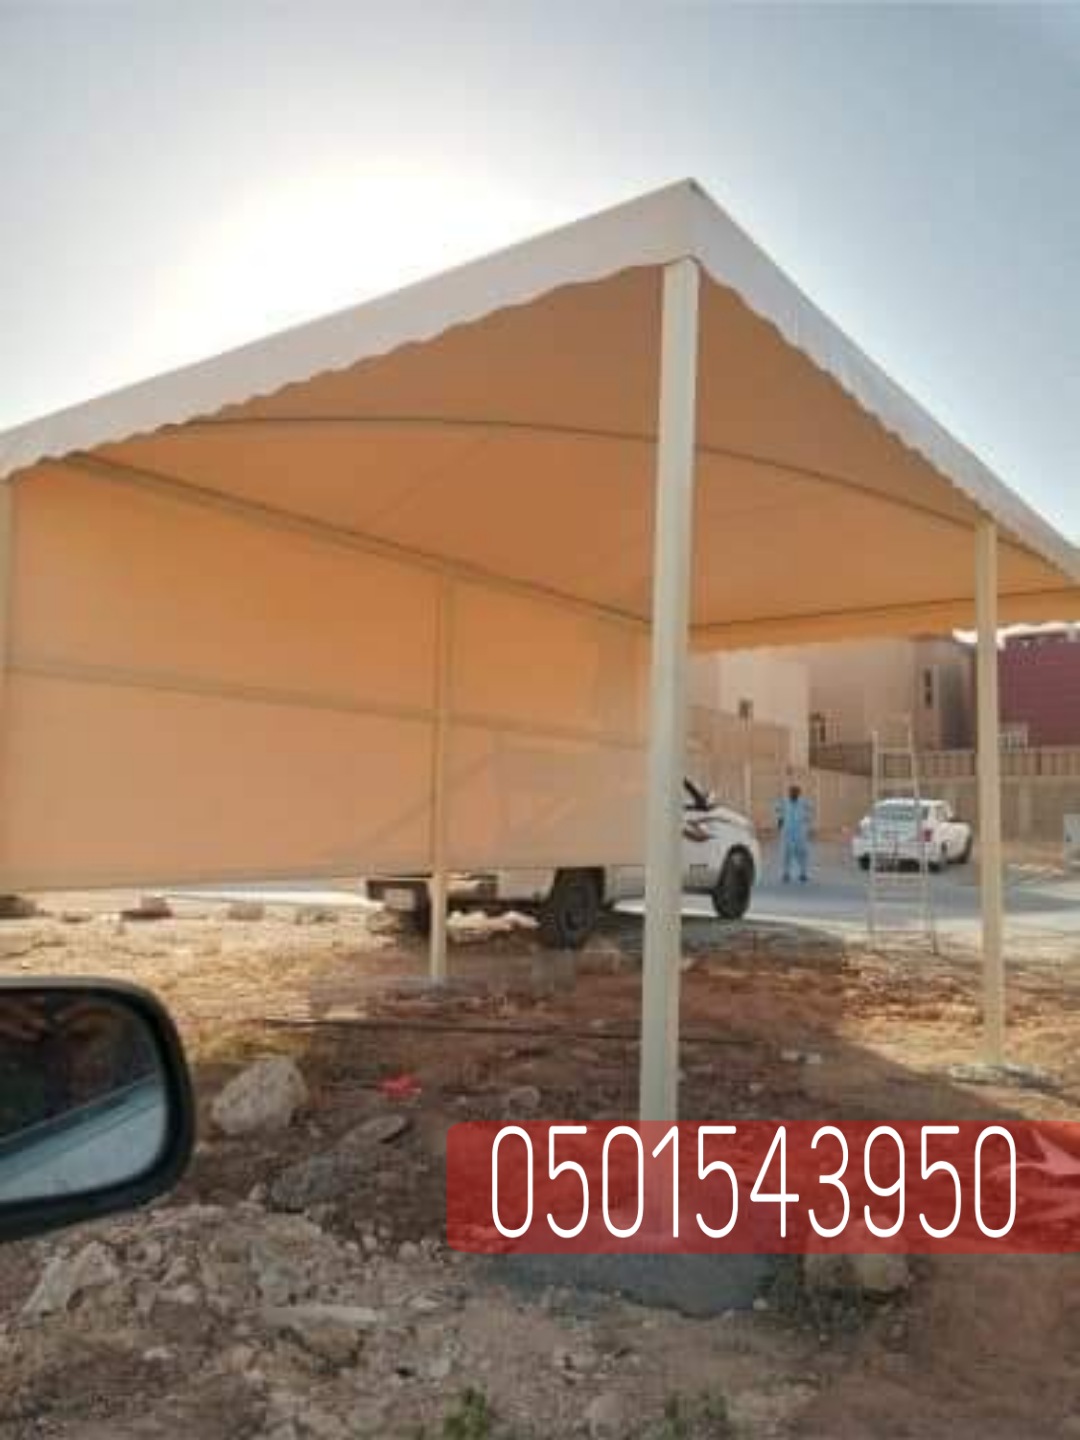 انواع مظلات السيارات في الرياض , 0501543950 P_2360xy7gf6